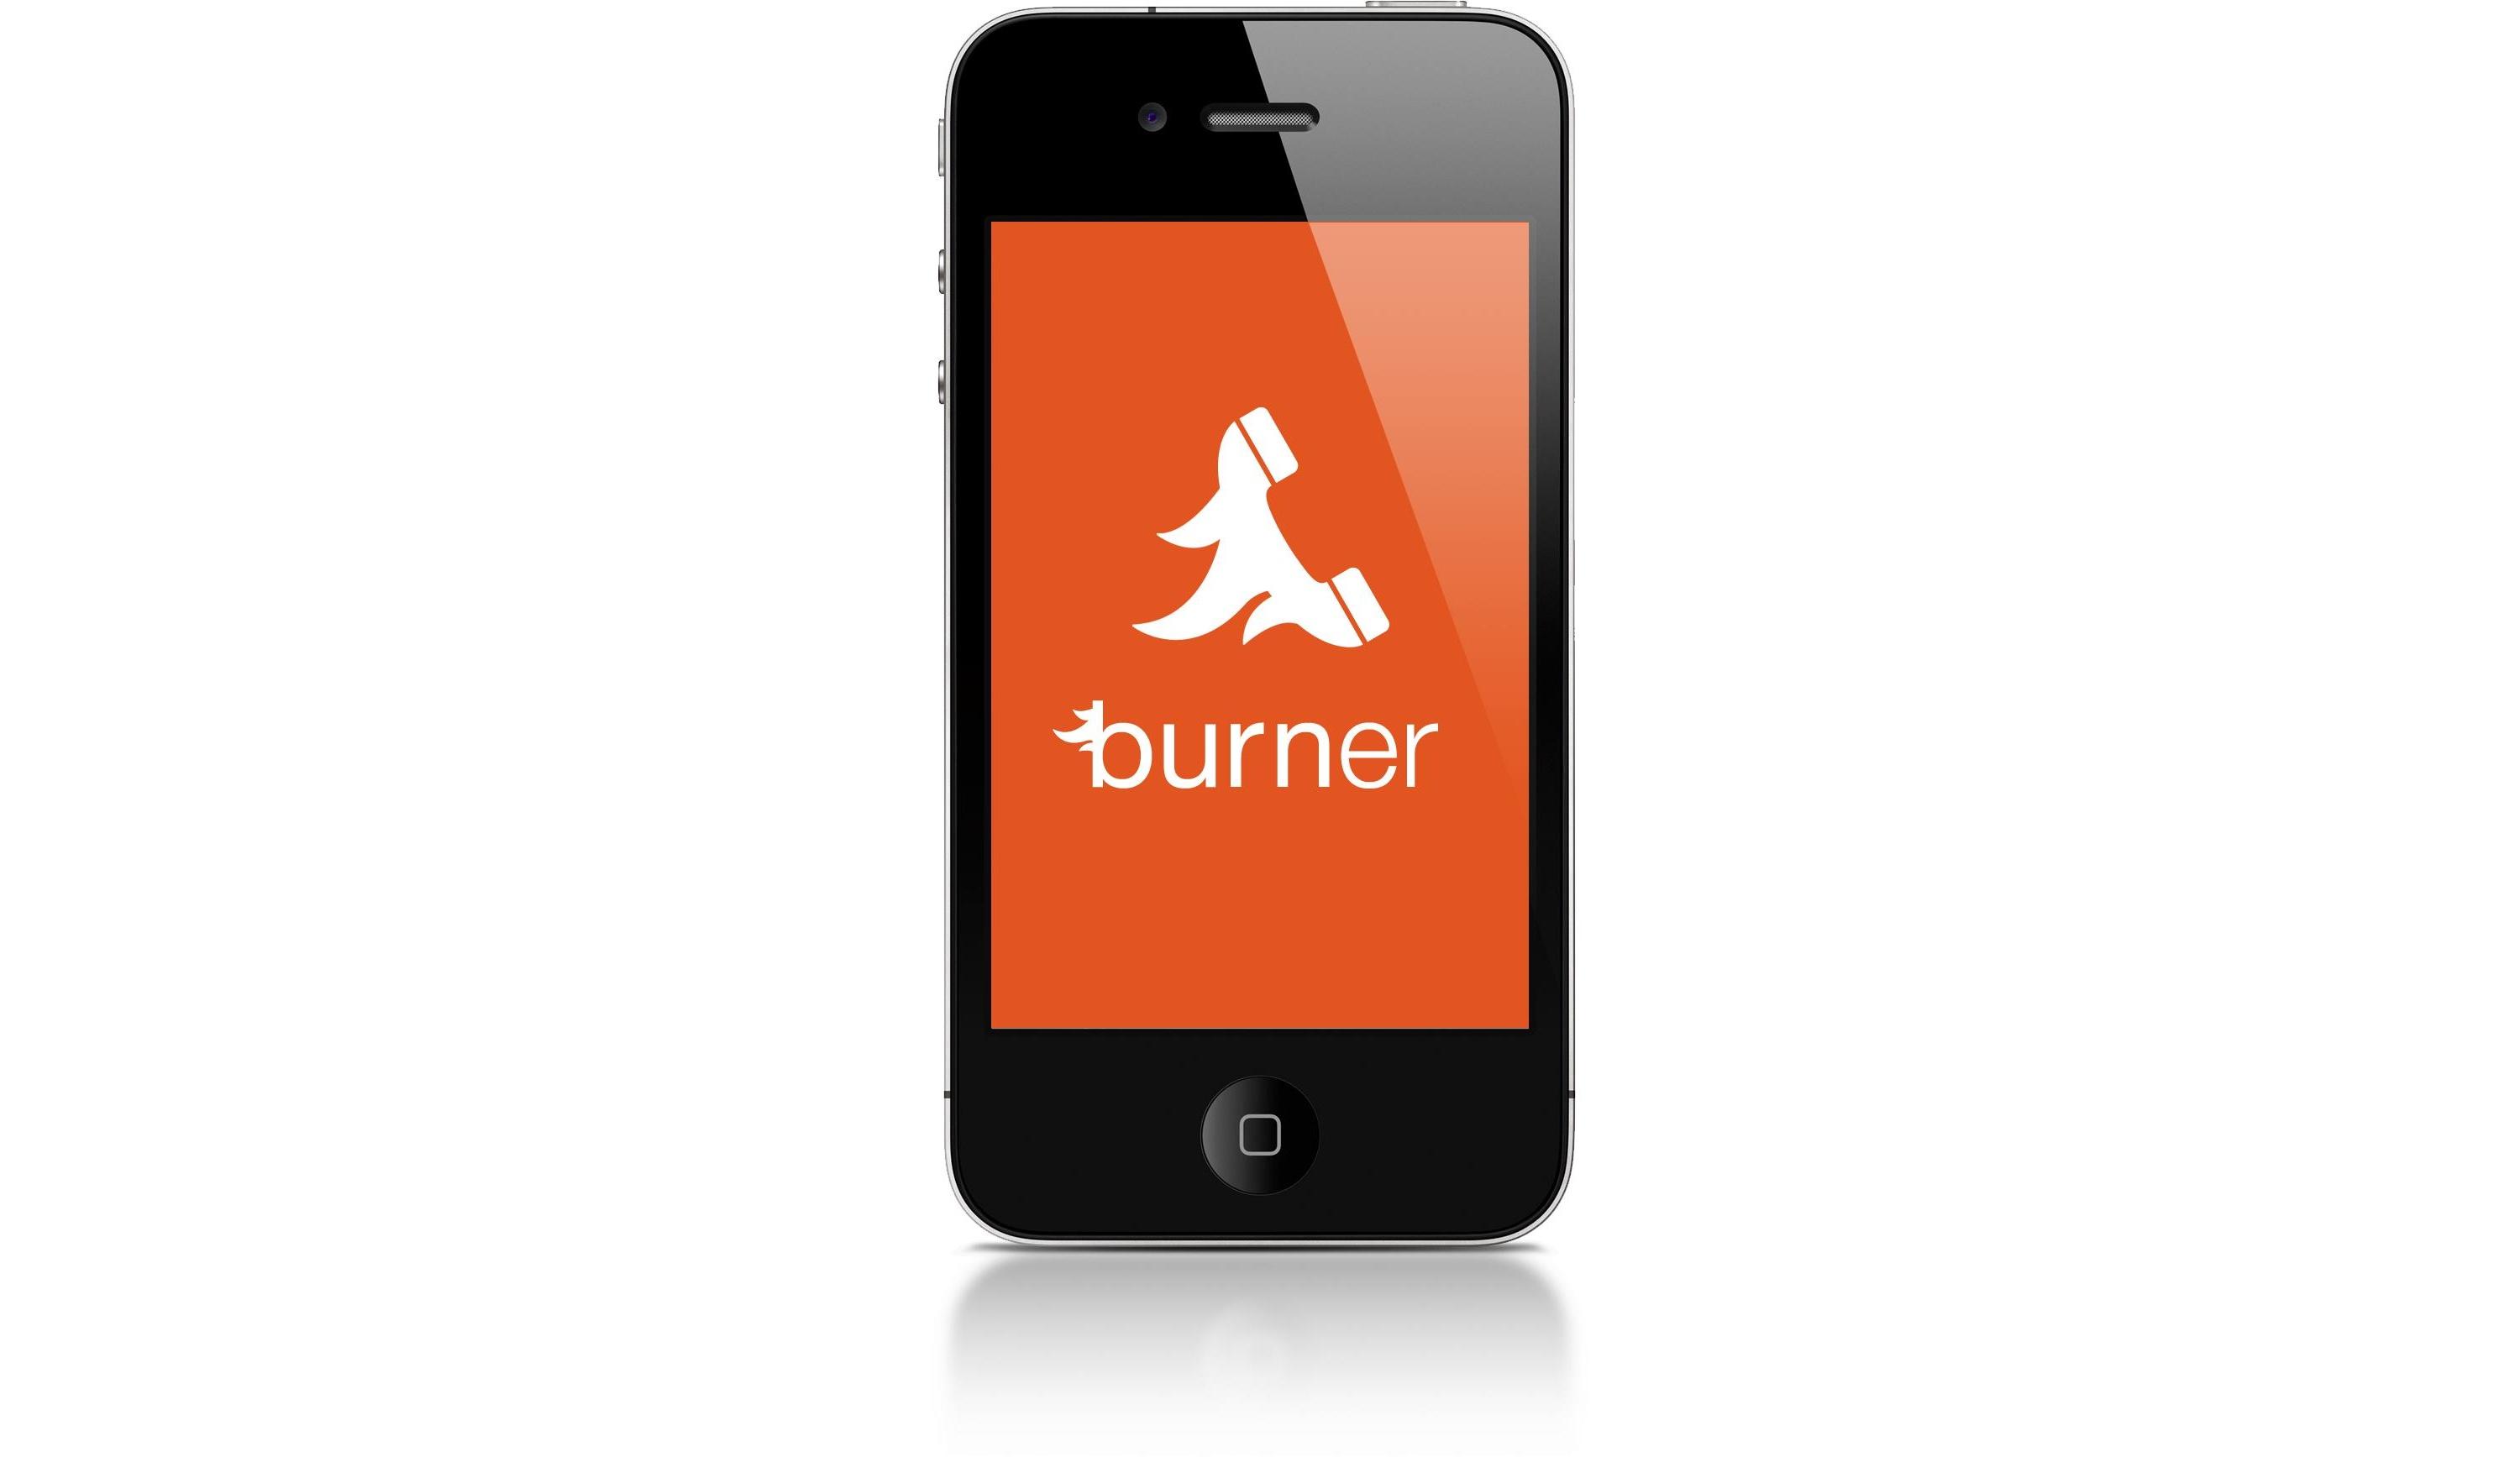 Burner App